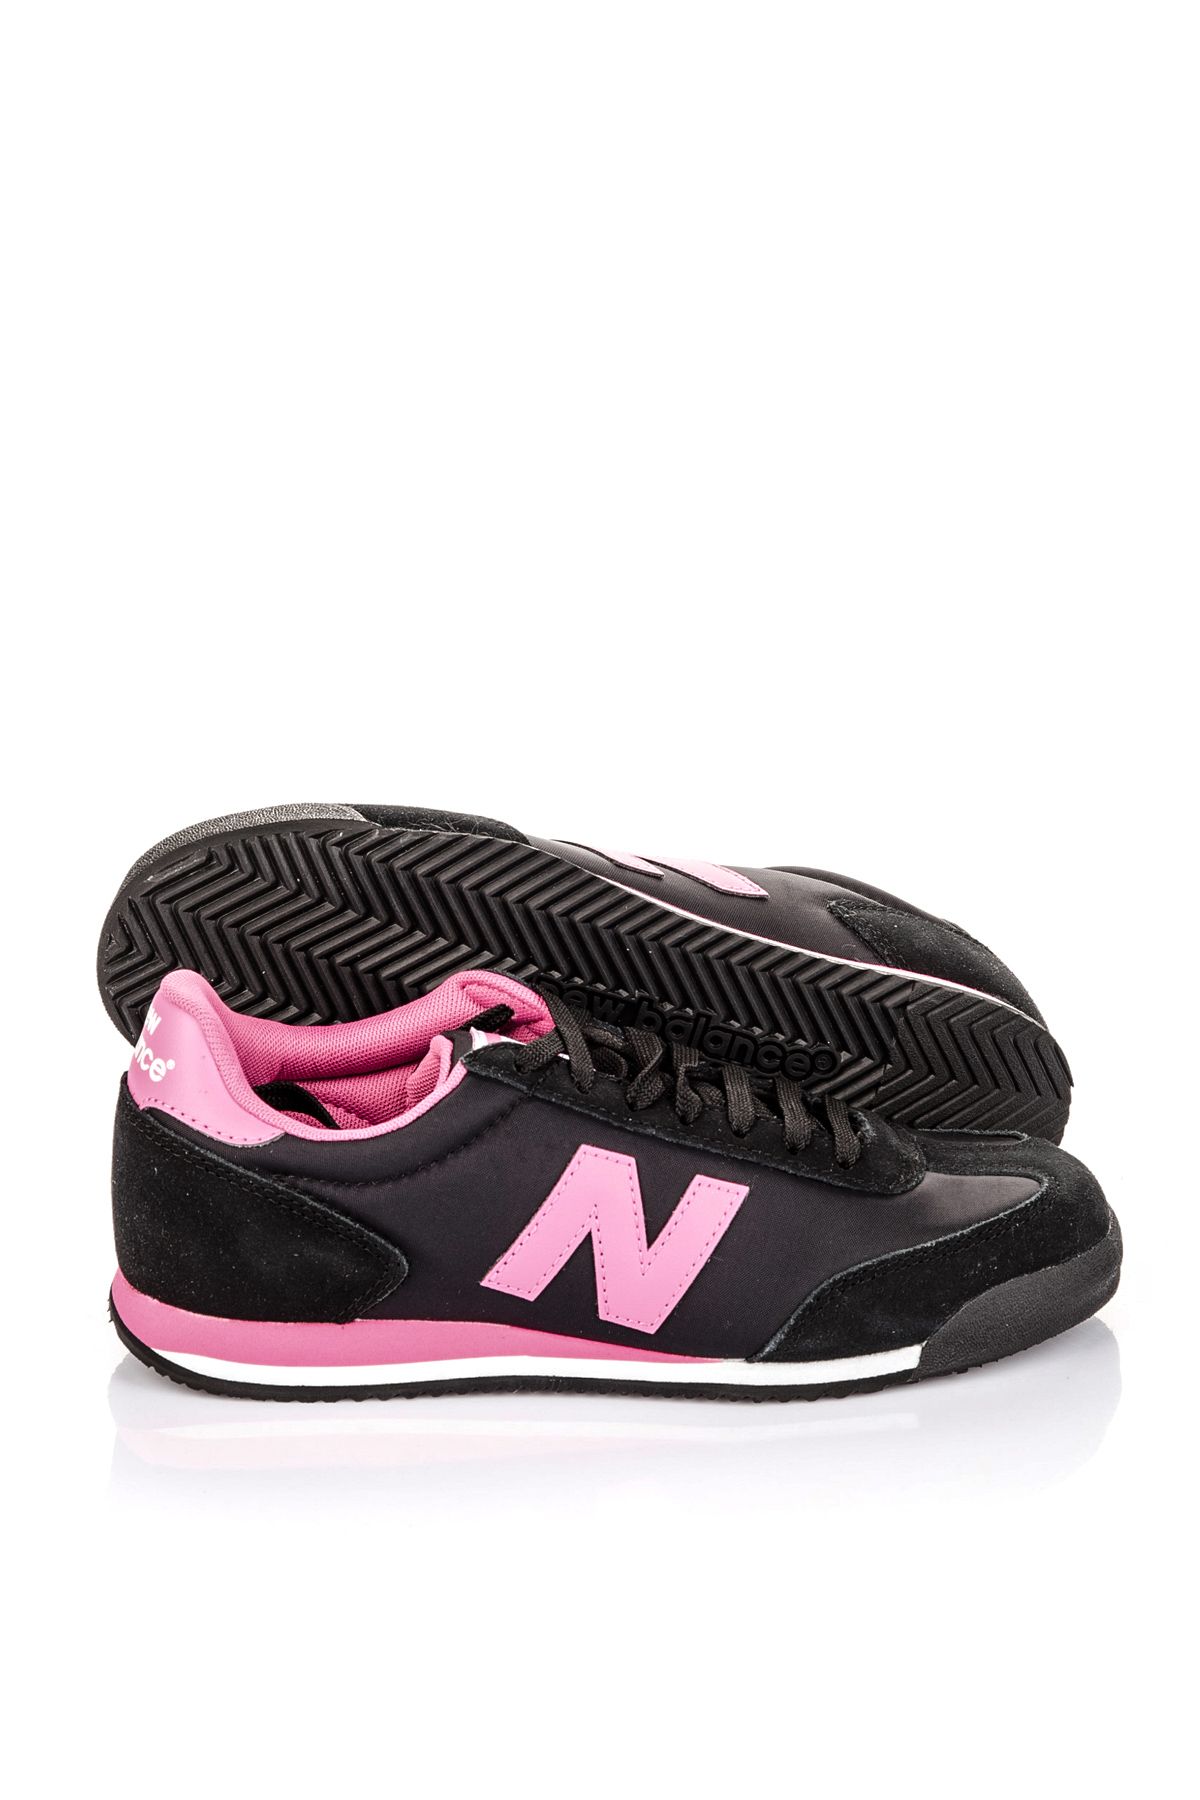 New Balance 360 Kadın Spor Ayakkabı - WL360SNB Yorumları - Trendyol